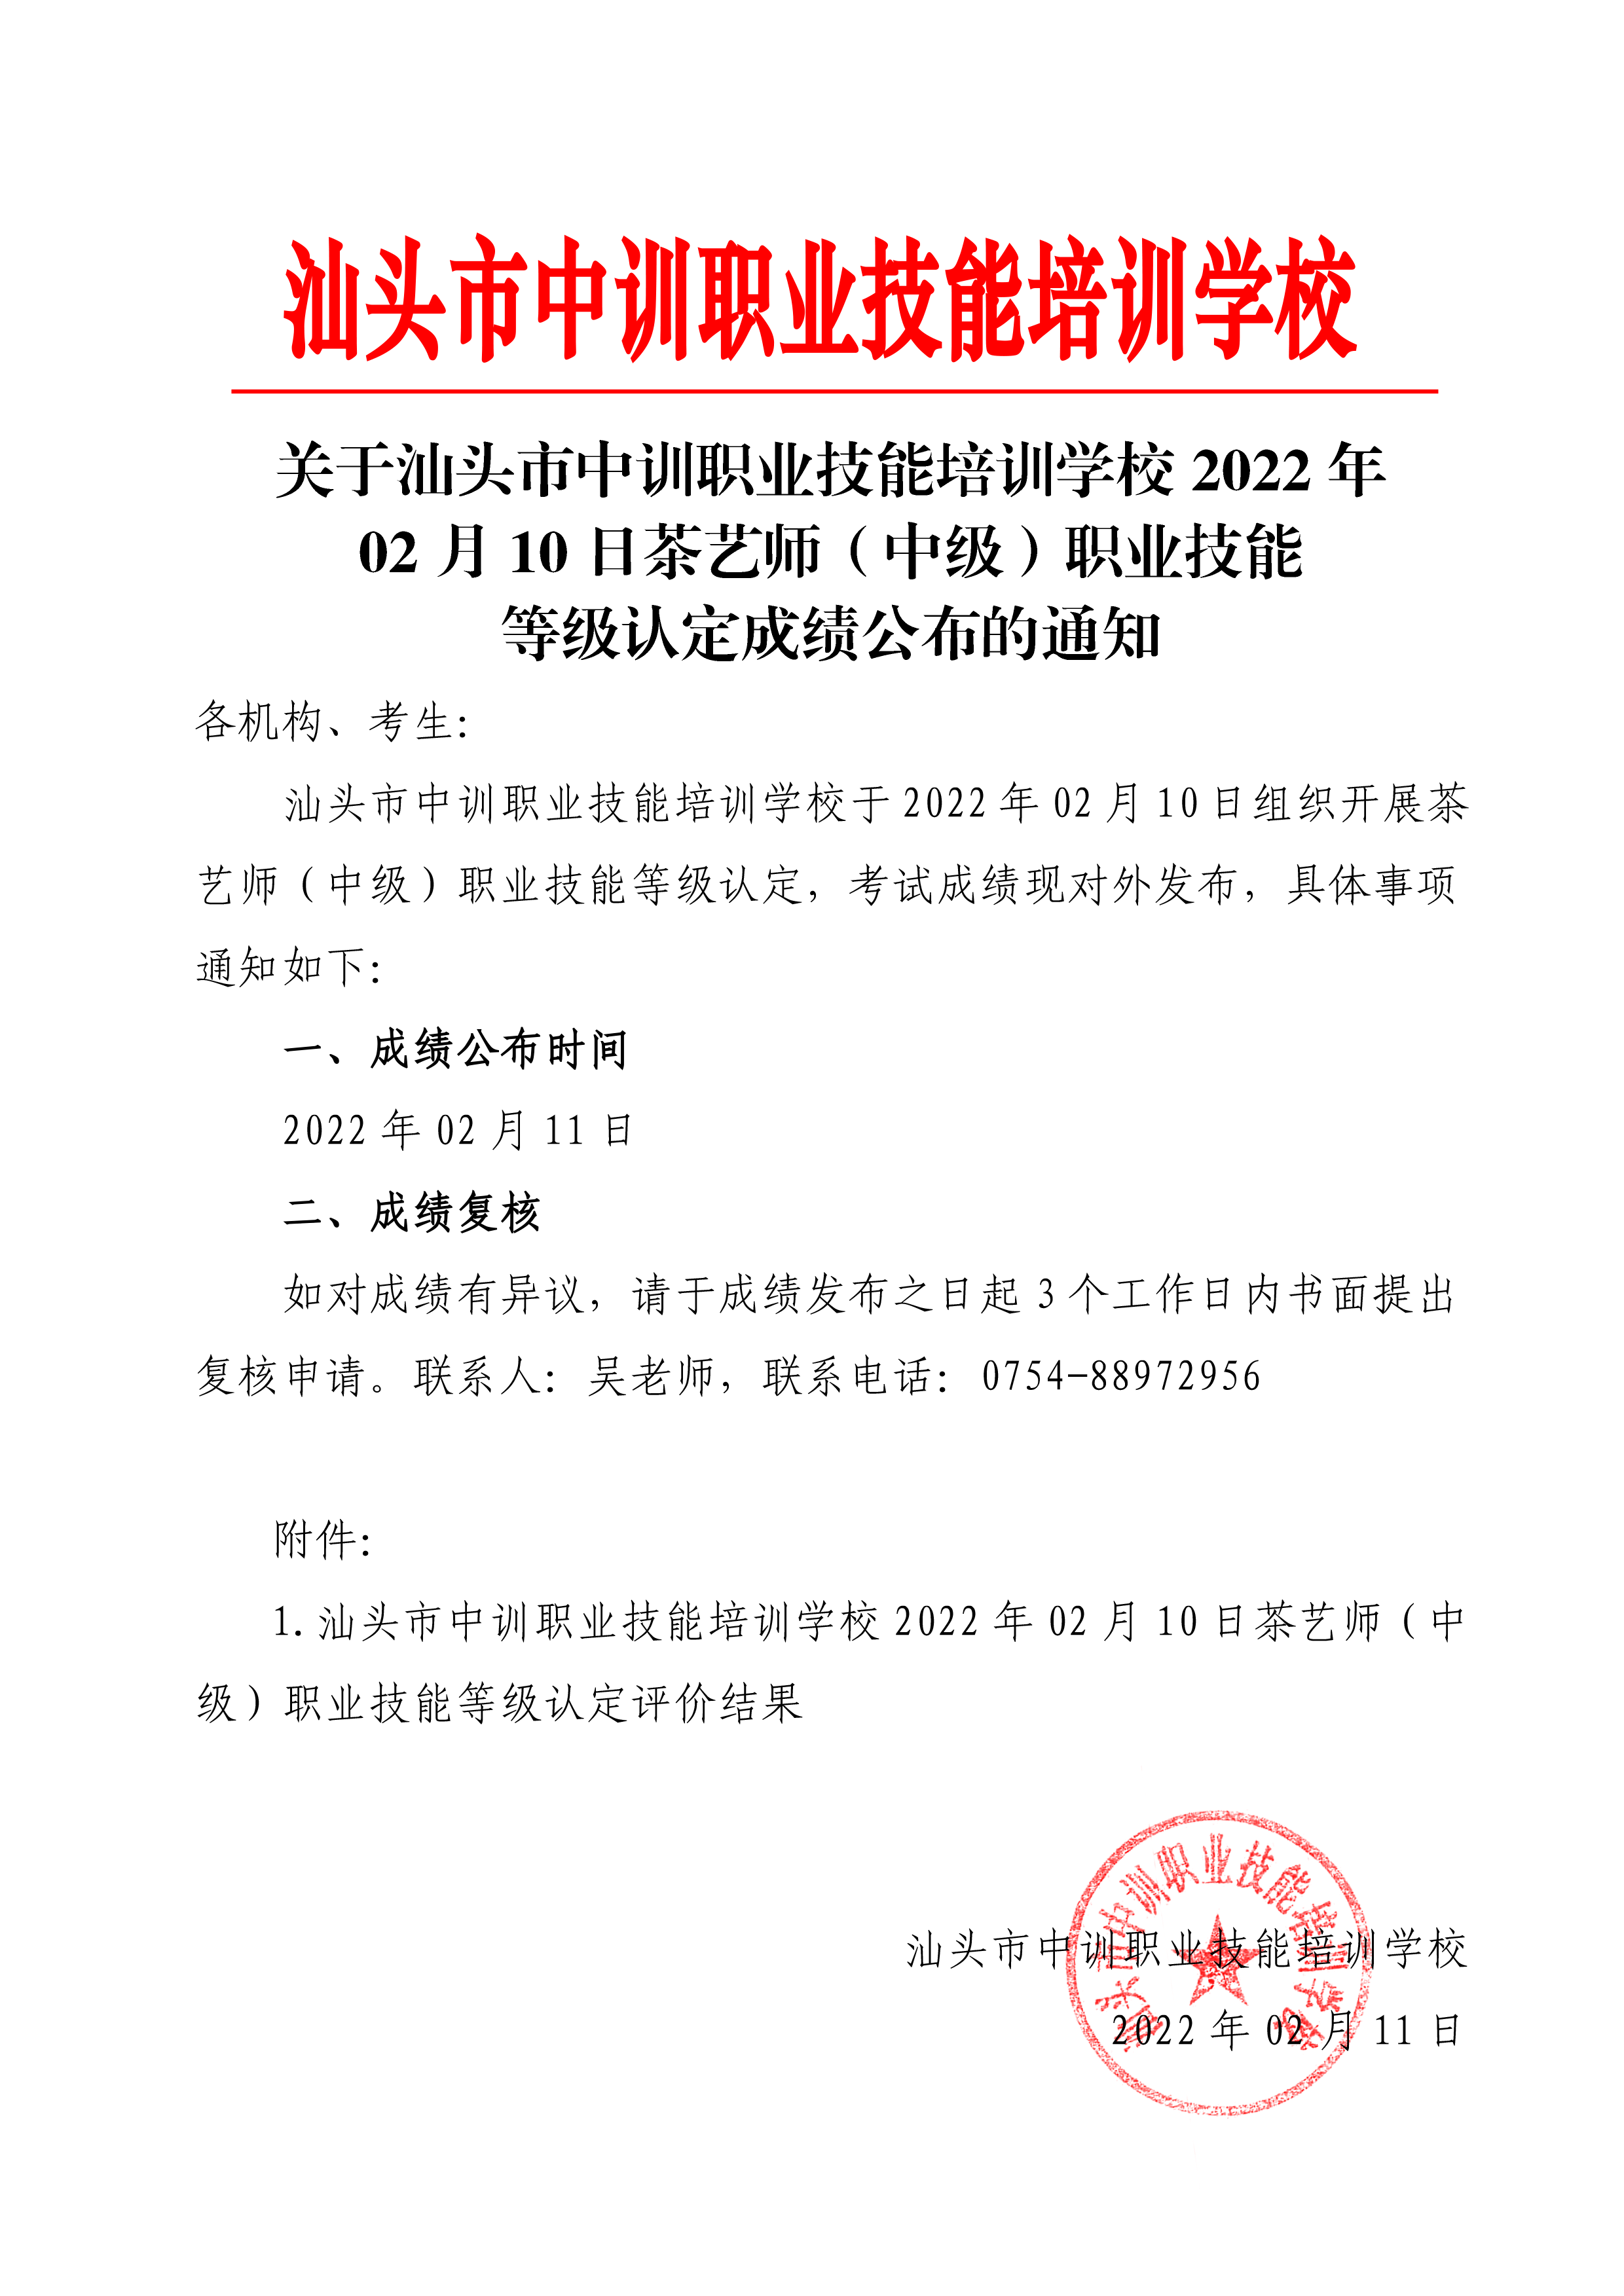 220209-10茶艺师（初）中级职业技能等级认定成绩公布通知-2 副本.png